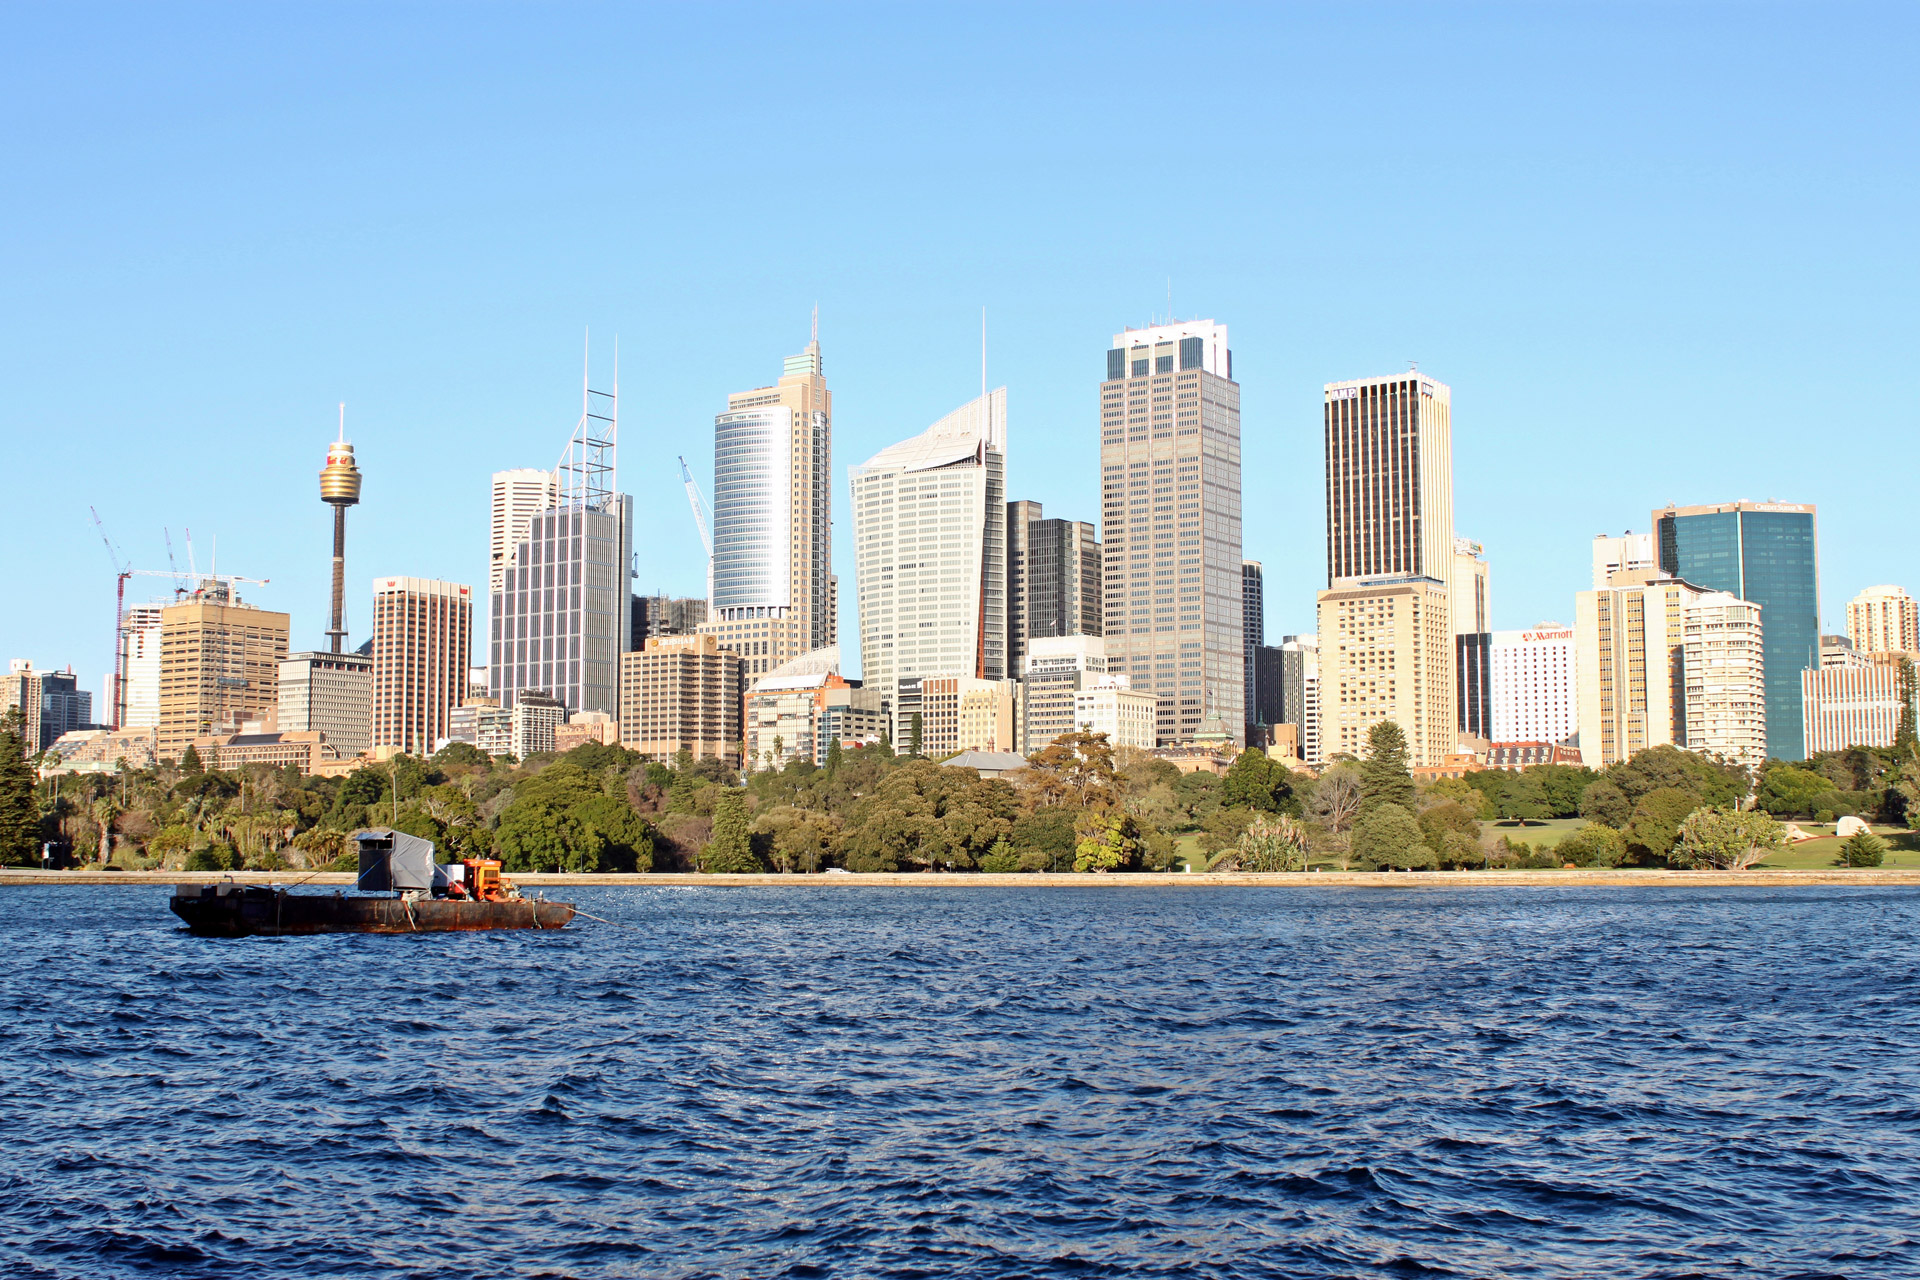 Sydney City Skyline